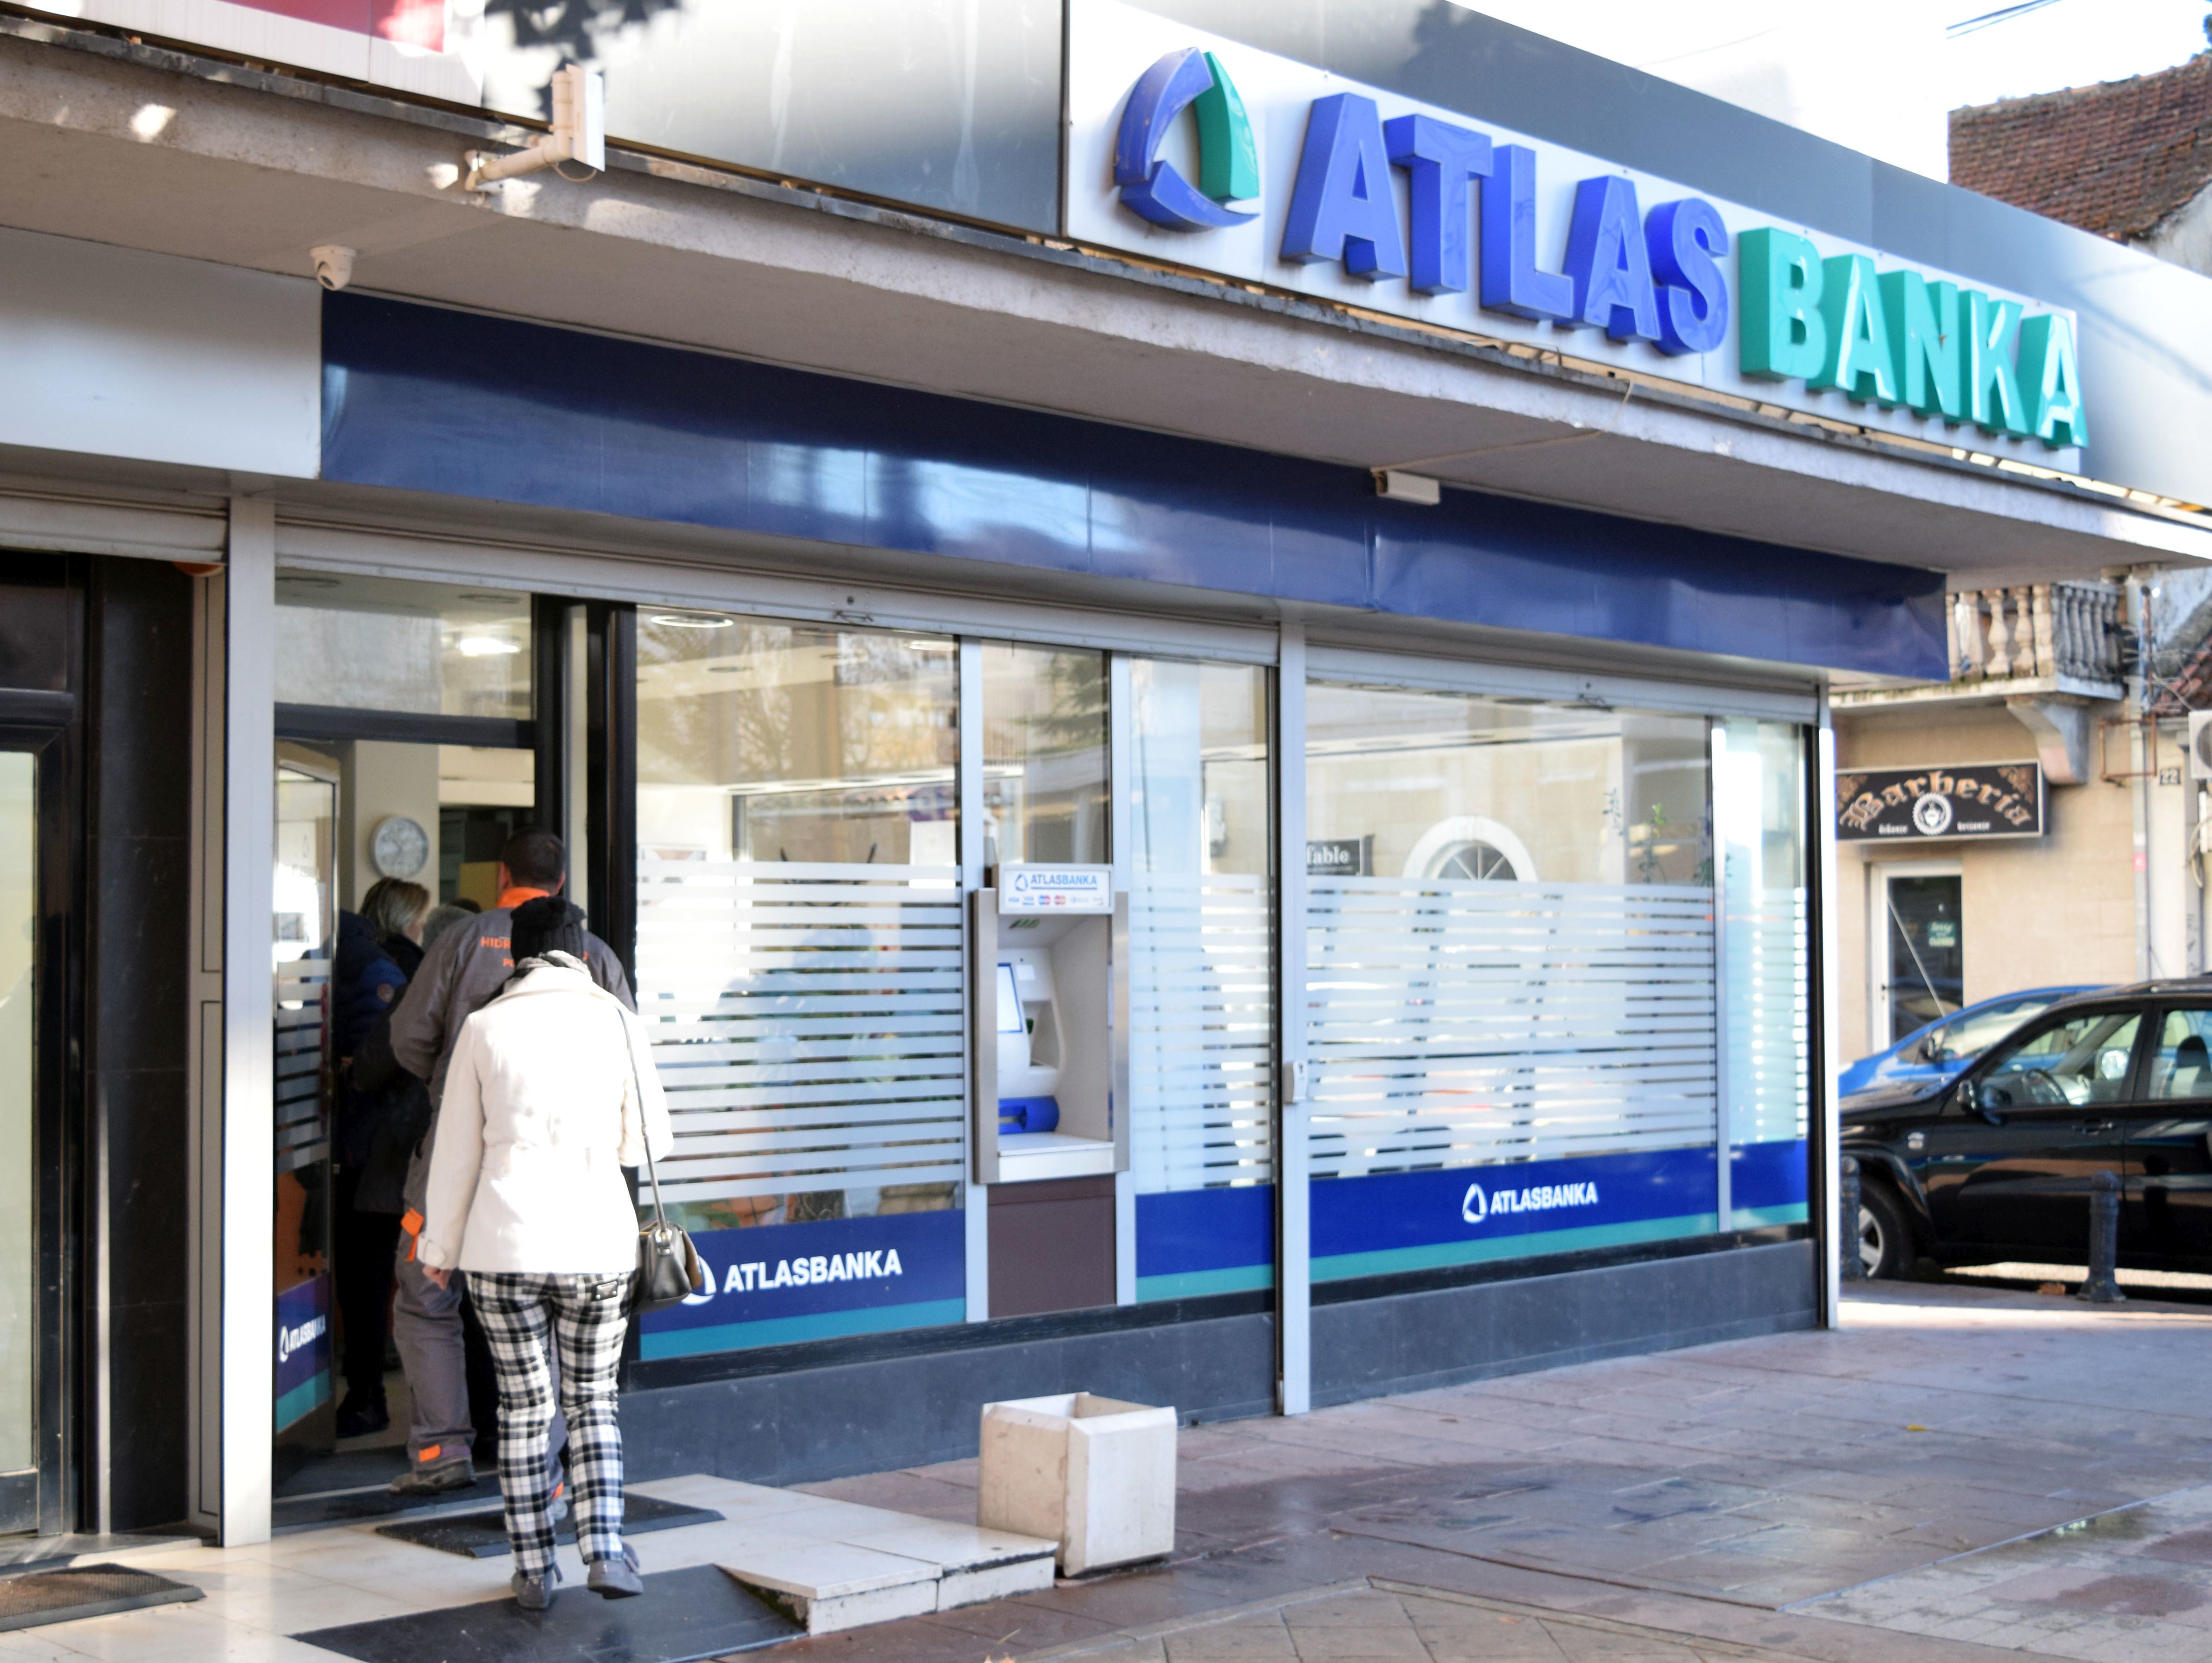 Atlas banka